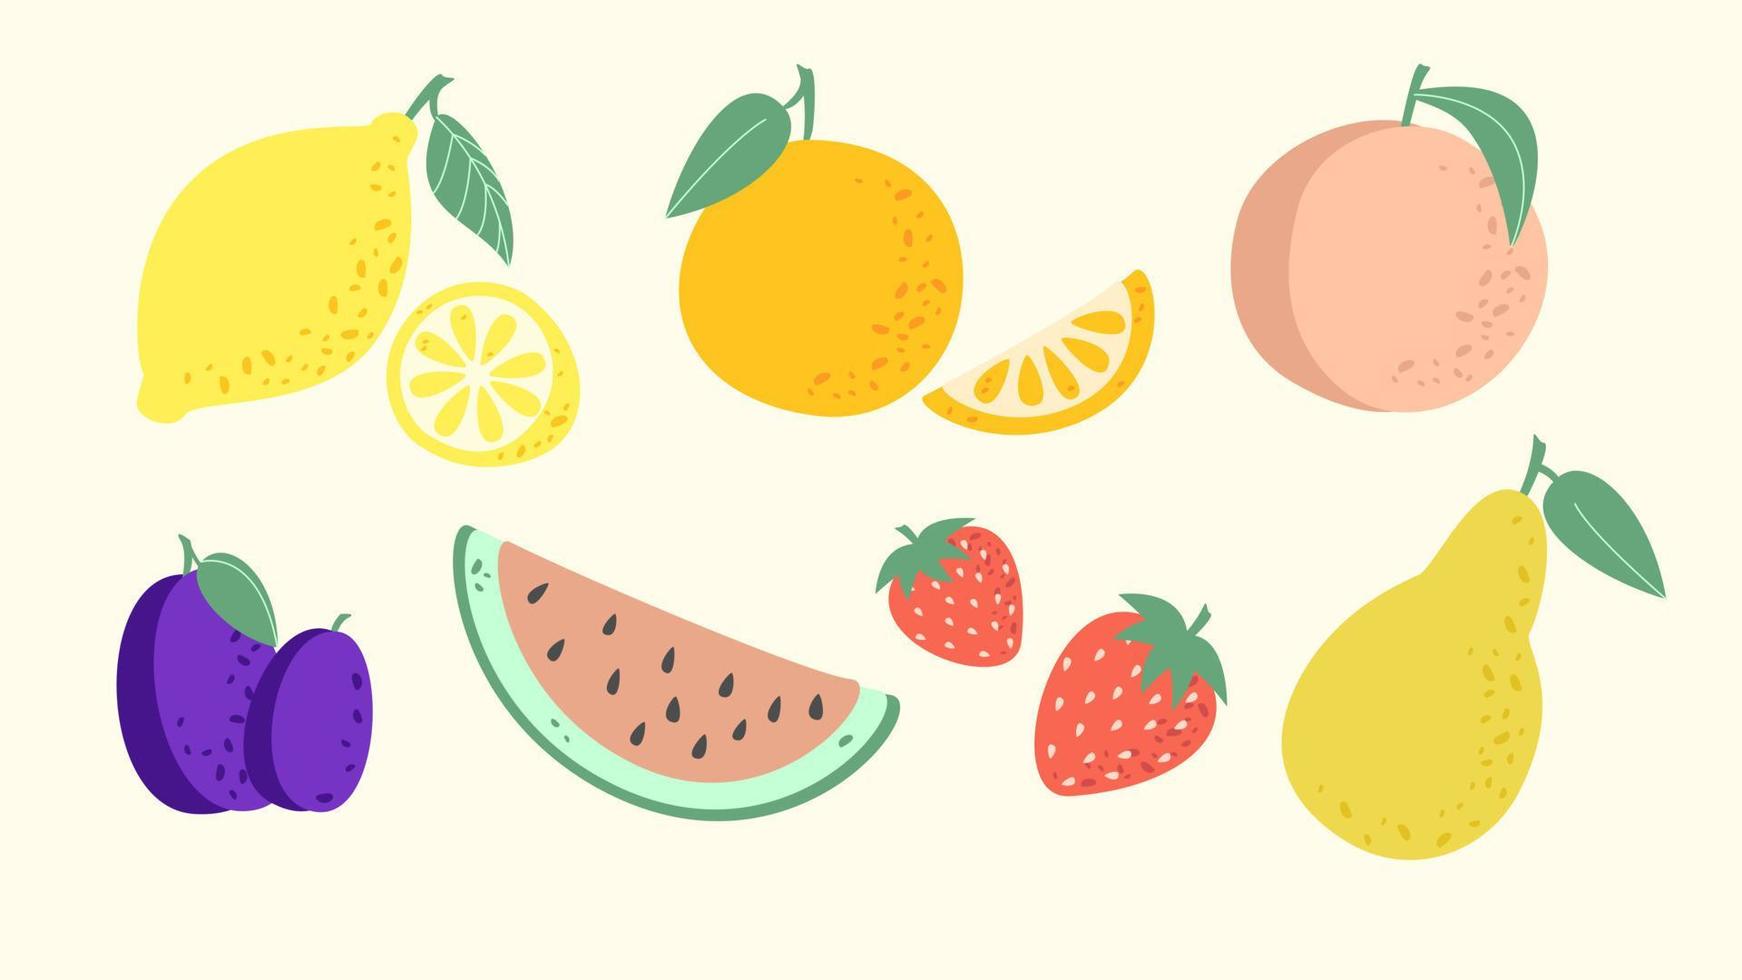 frukt samling i platt handritad stil, citron, apelsin, persika, jordgubbe, vattenmelon, plommon, päron illustrationer set. vektorgrafik vektor